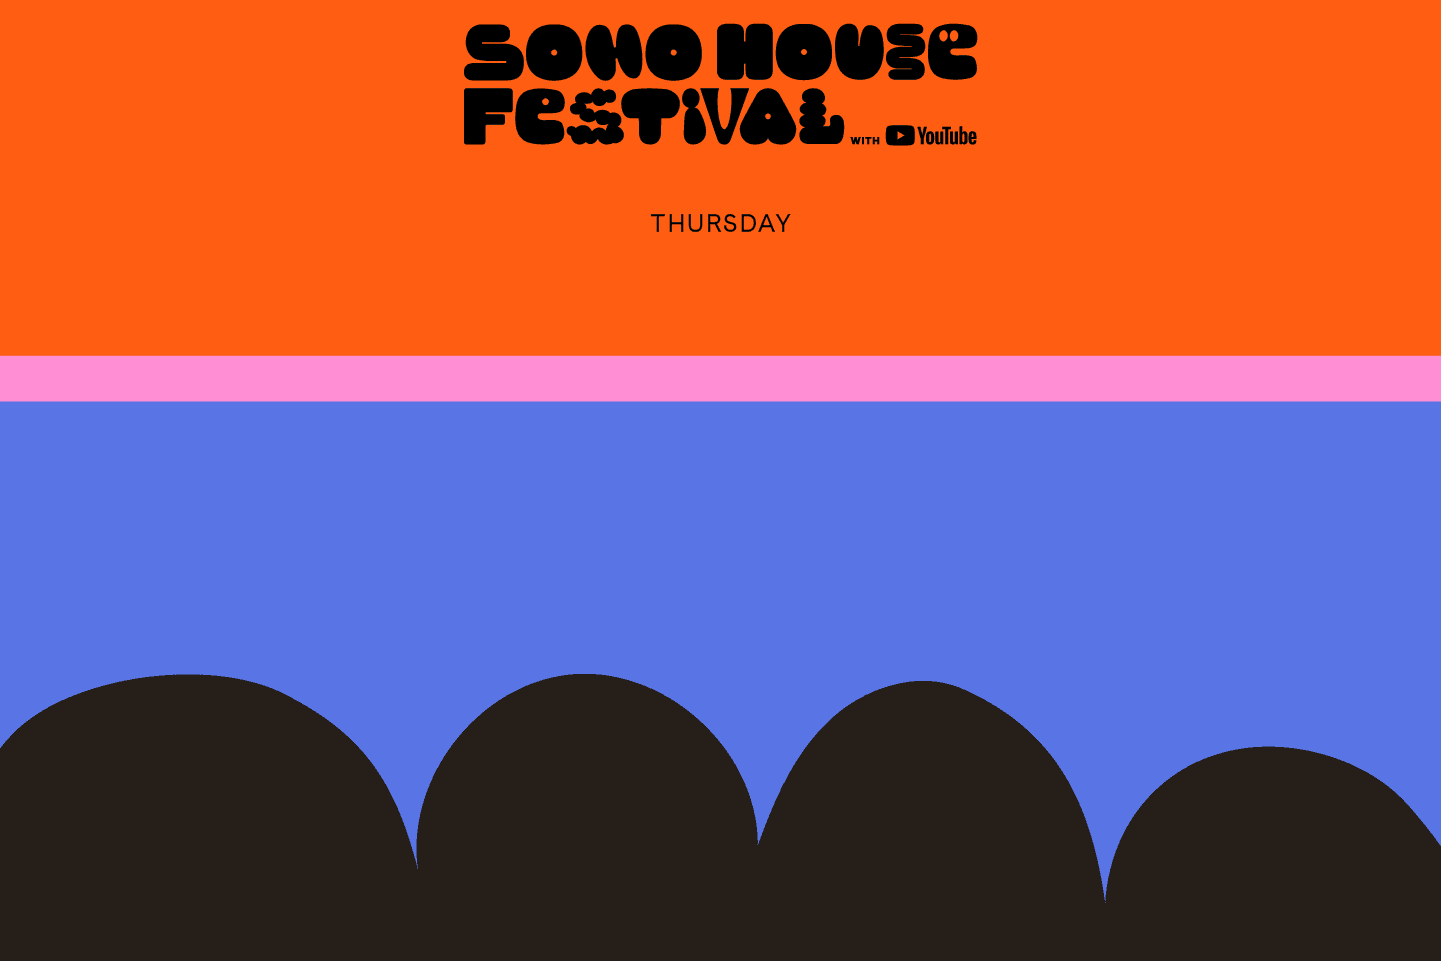 Soho House Festival Thursday